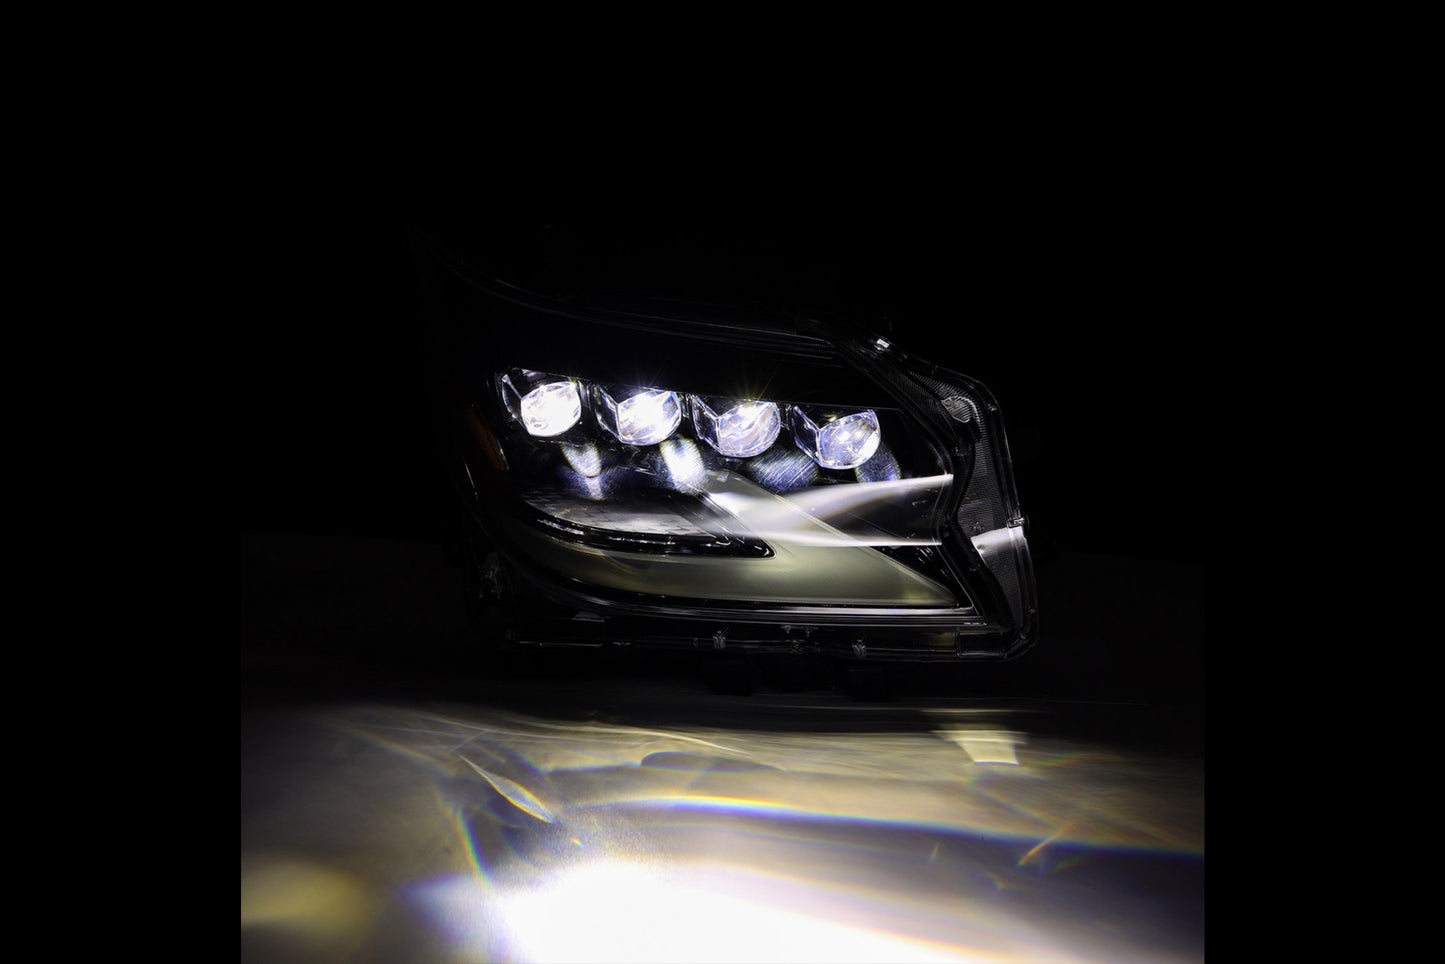 ARex Nova LED Headlights: Lexus GX460 (14-19) - Black (Set)